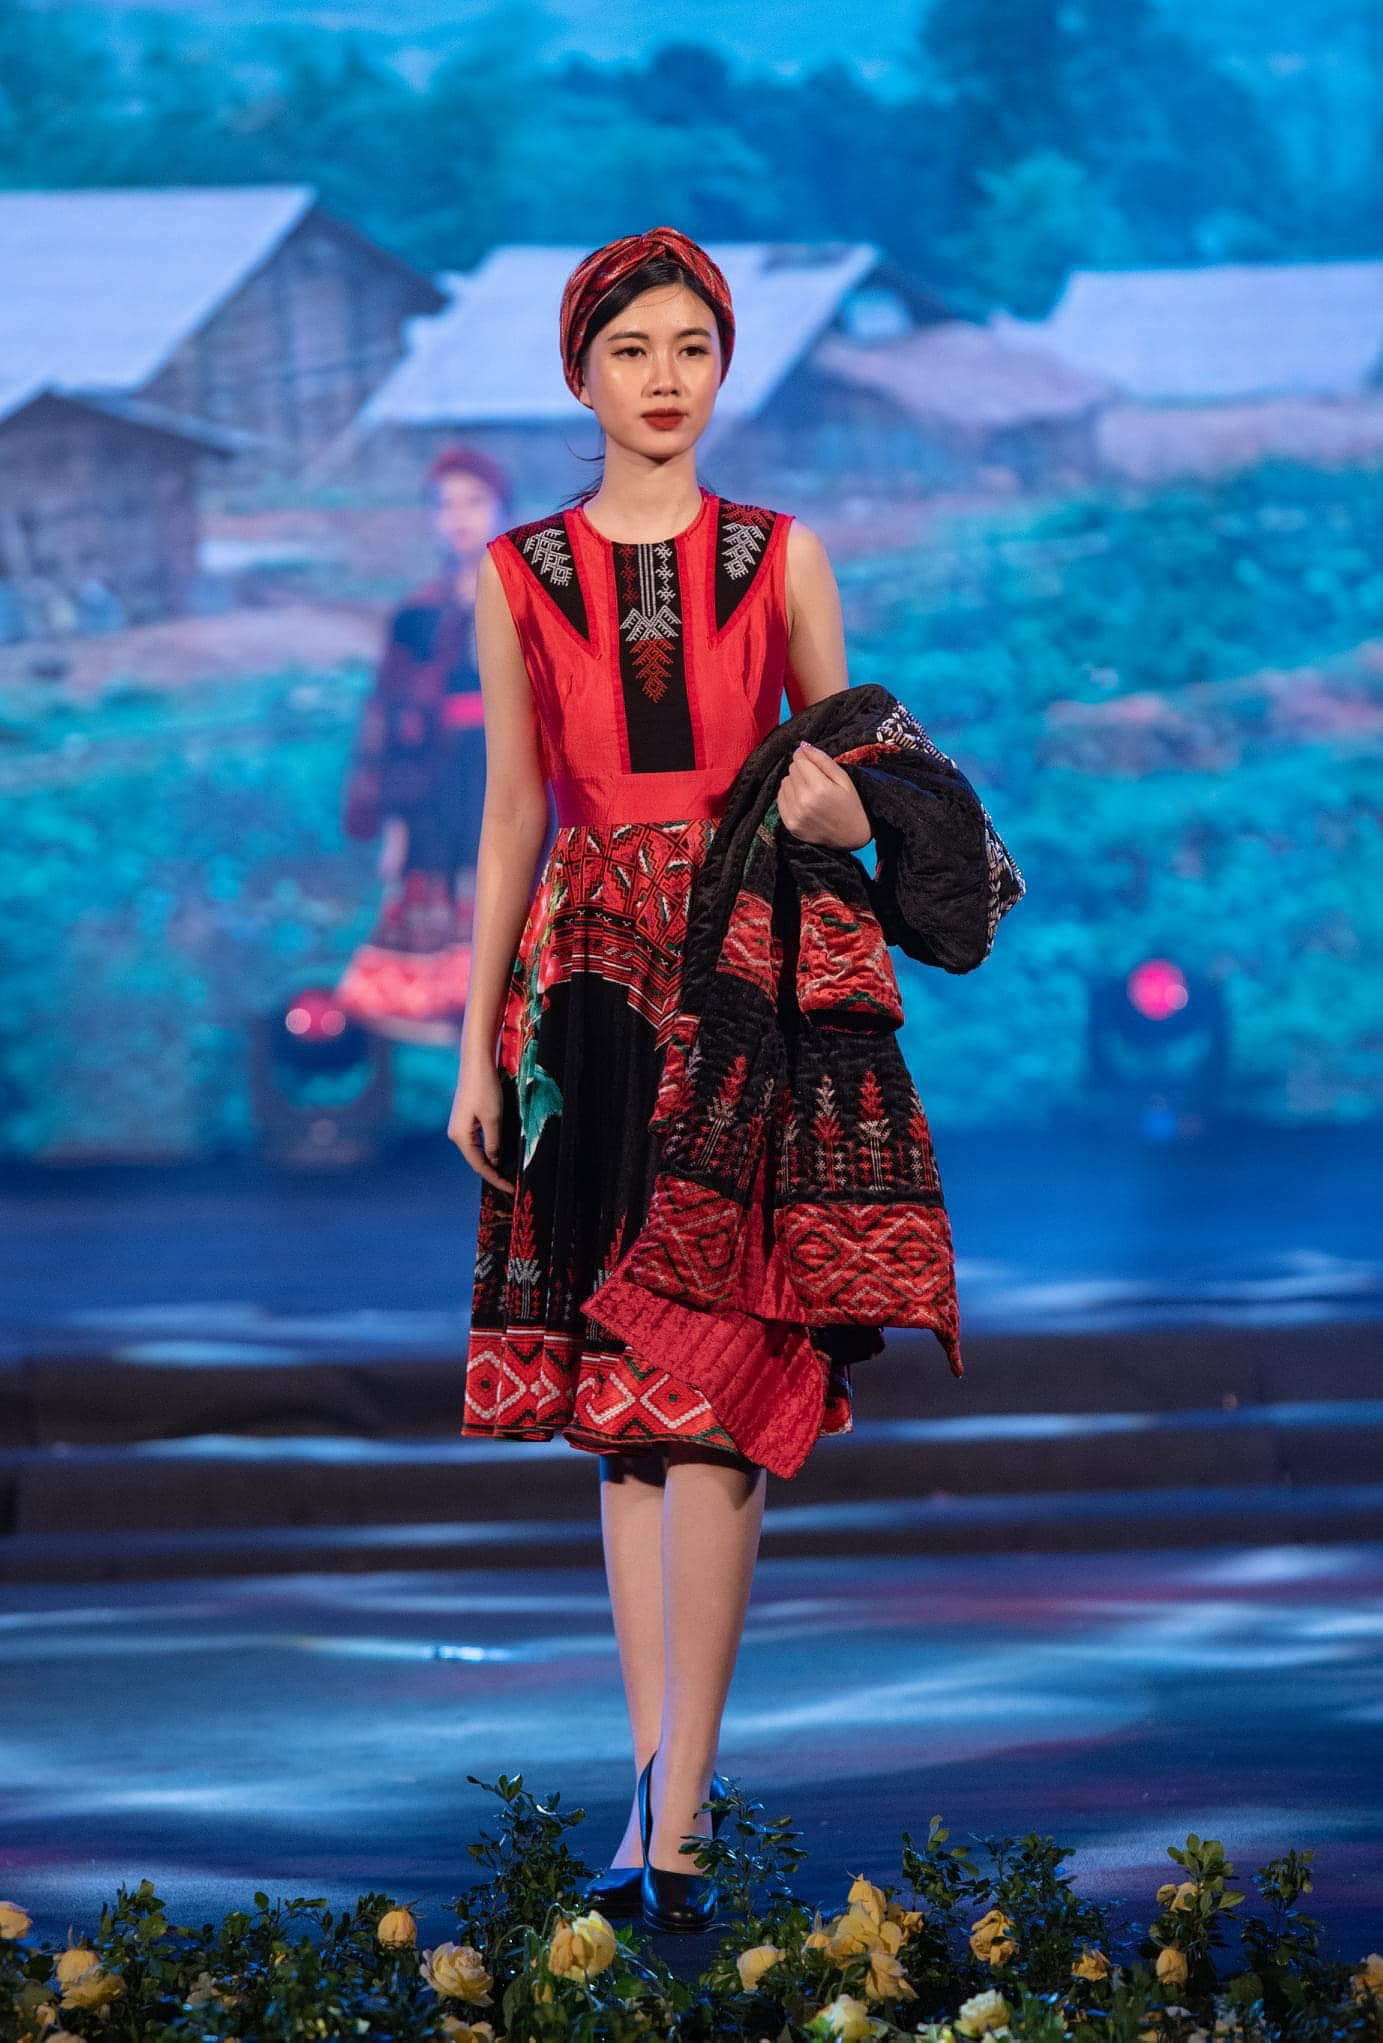 Thu Hoà cũng thử sức với công việc người mẫu, hoạt động chủ yếu tại Hà Nội. Hiện, người đẹp vẫn chưa tạo được nhiều ấn tượng sau 3 tập truyền hình thực tế dược lên sóng.